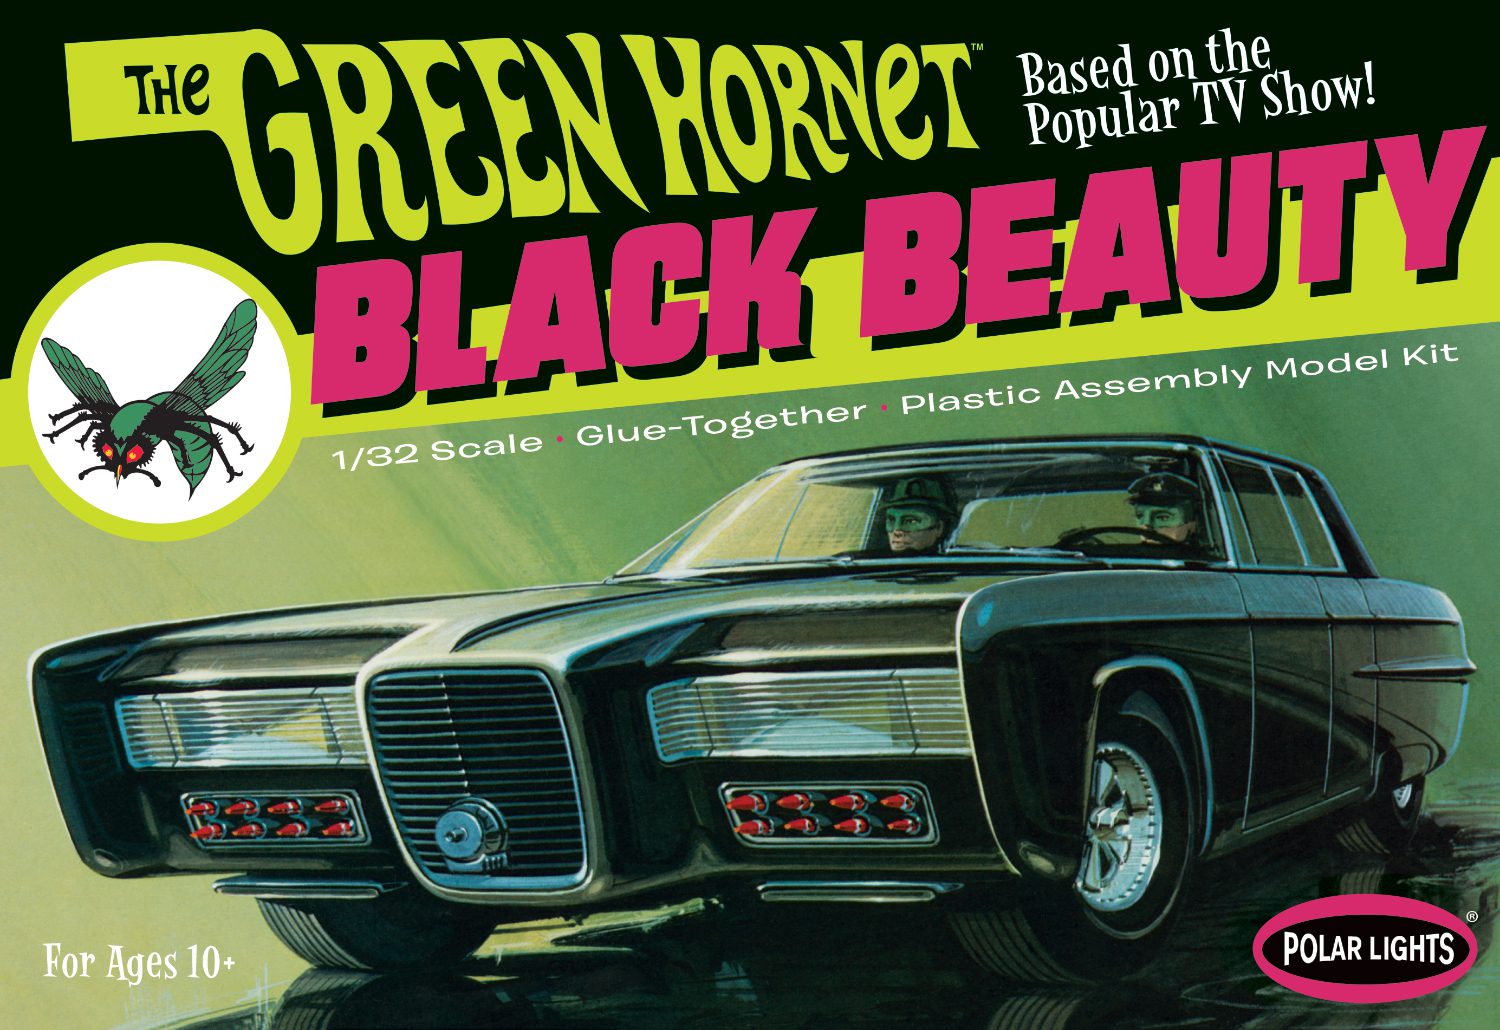 1:32 Green Hornet Black Beauty